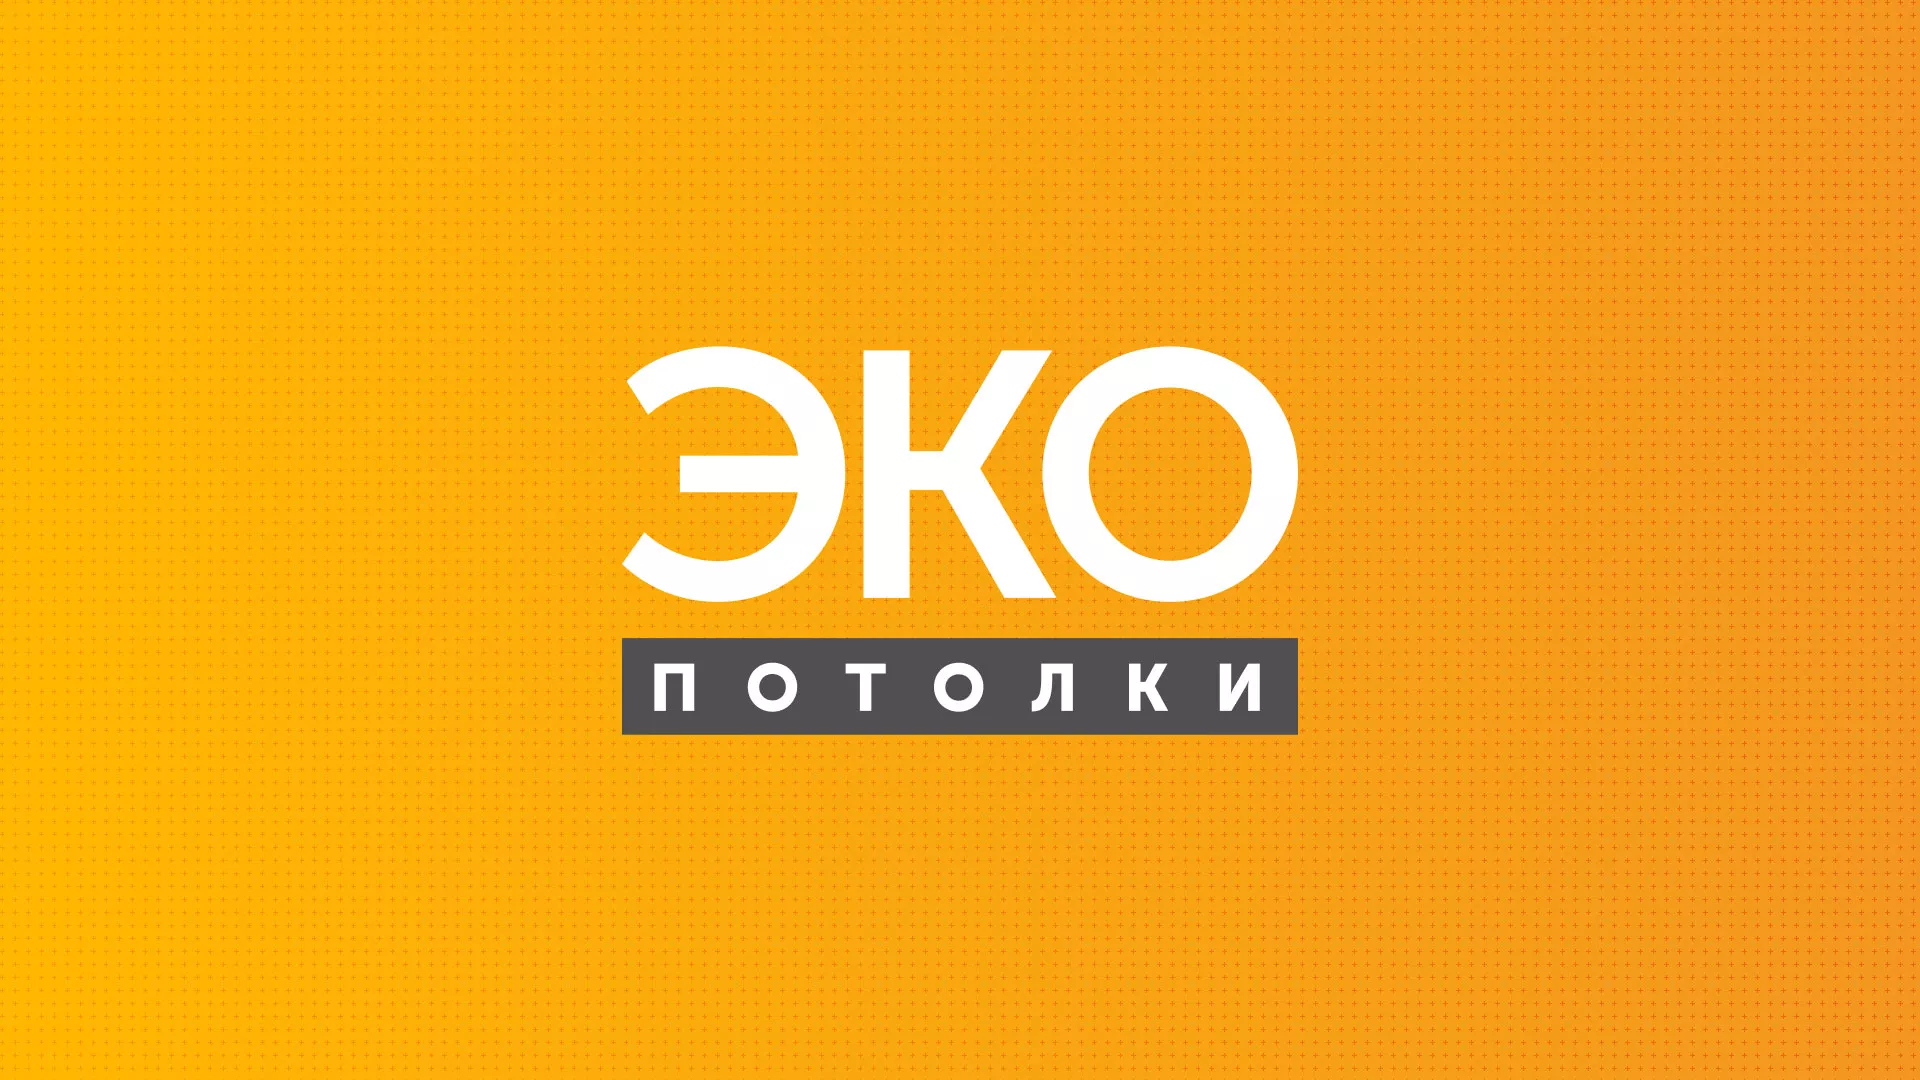 Разработка сайта по натяжным потолкам «Эко Потолки» в Вологде